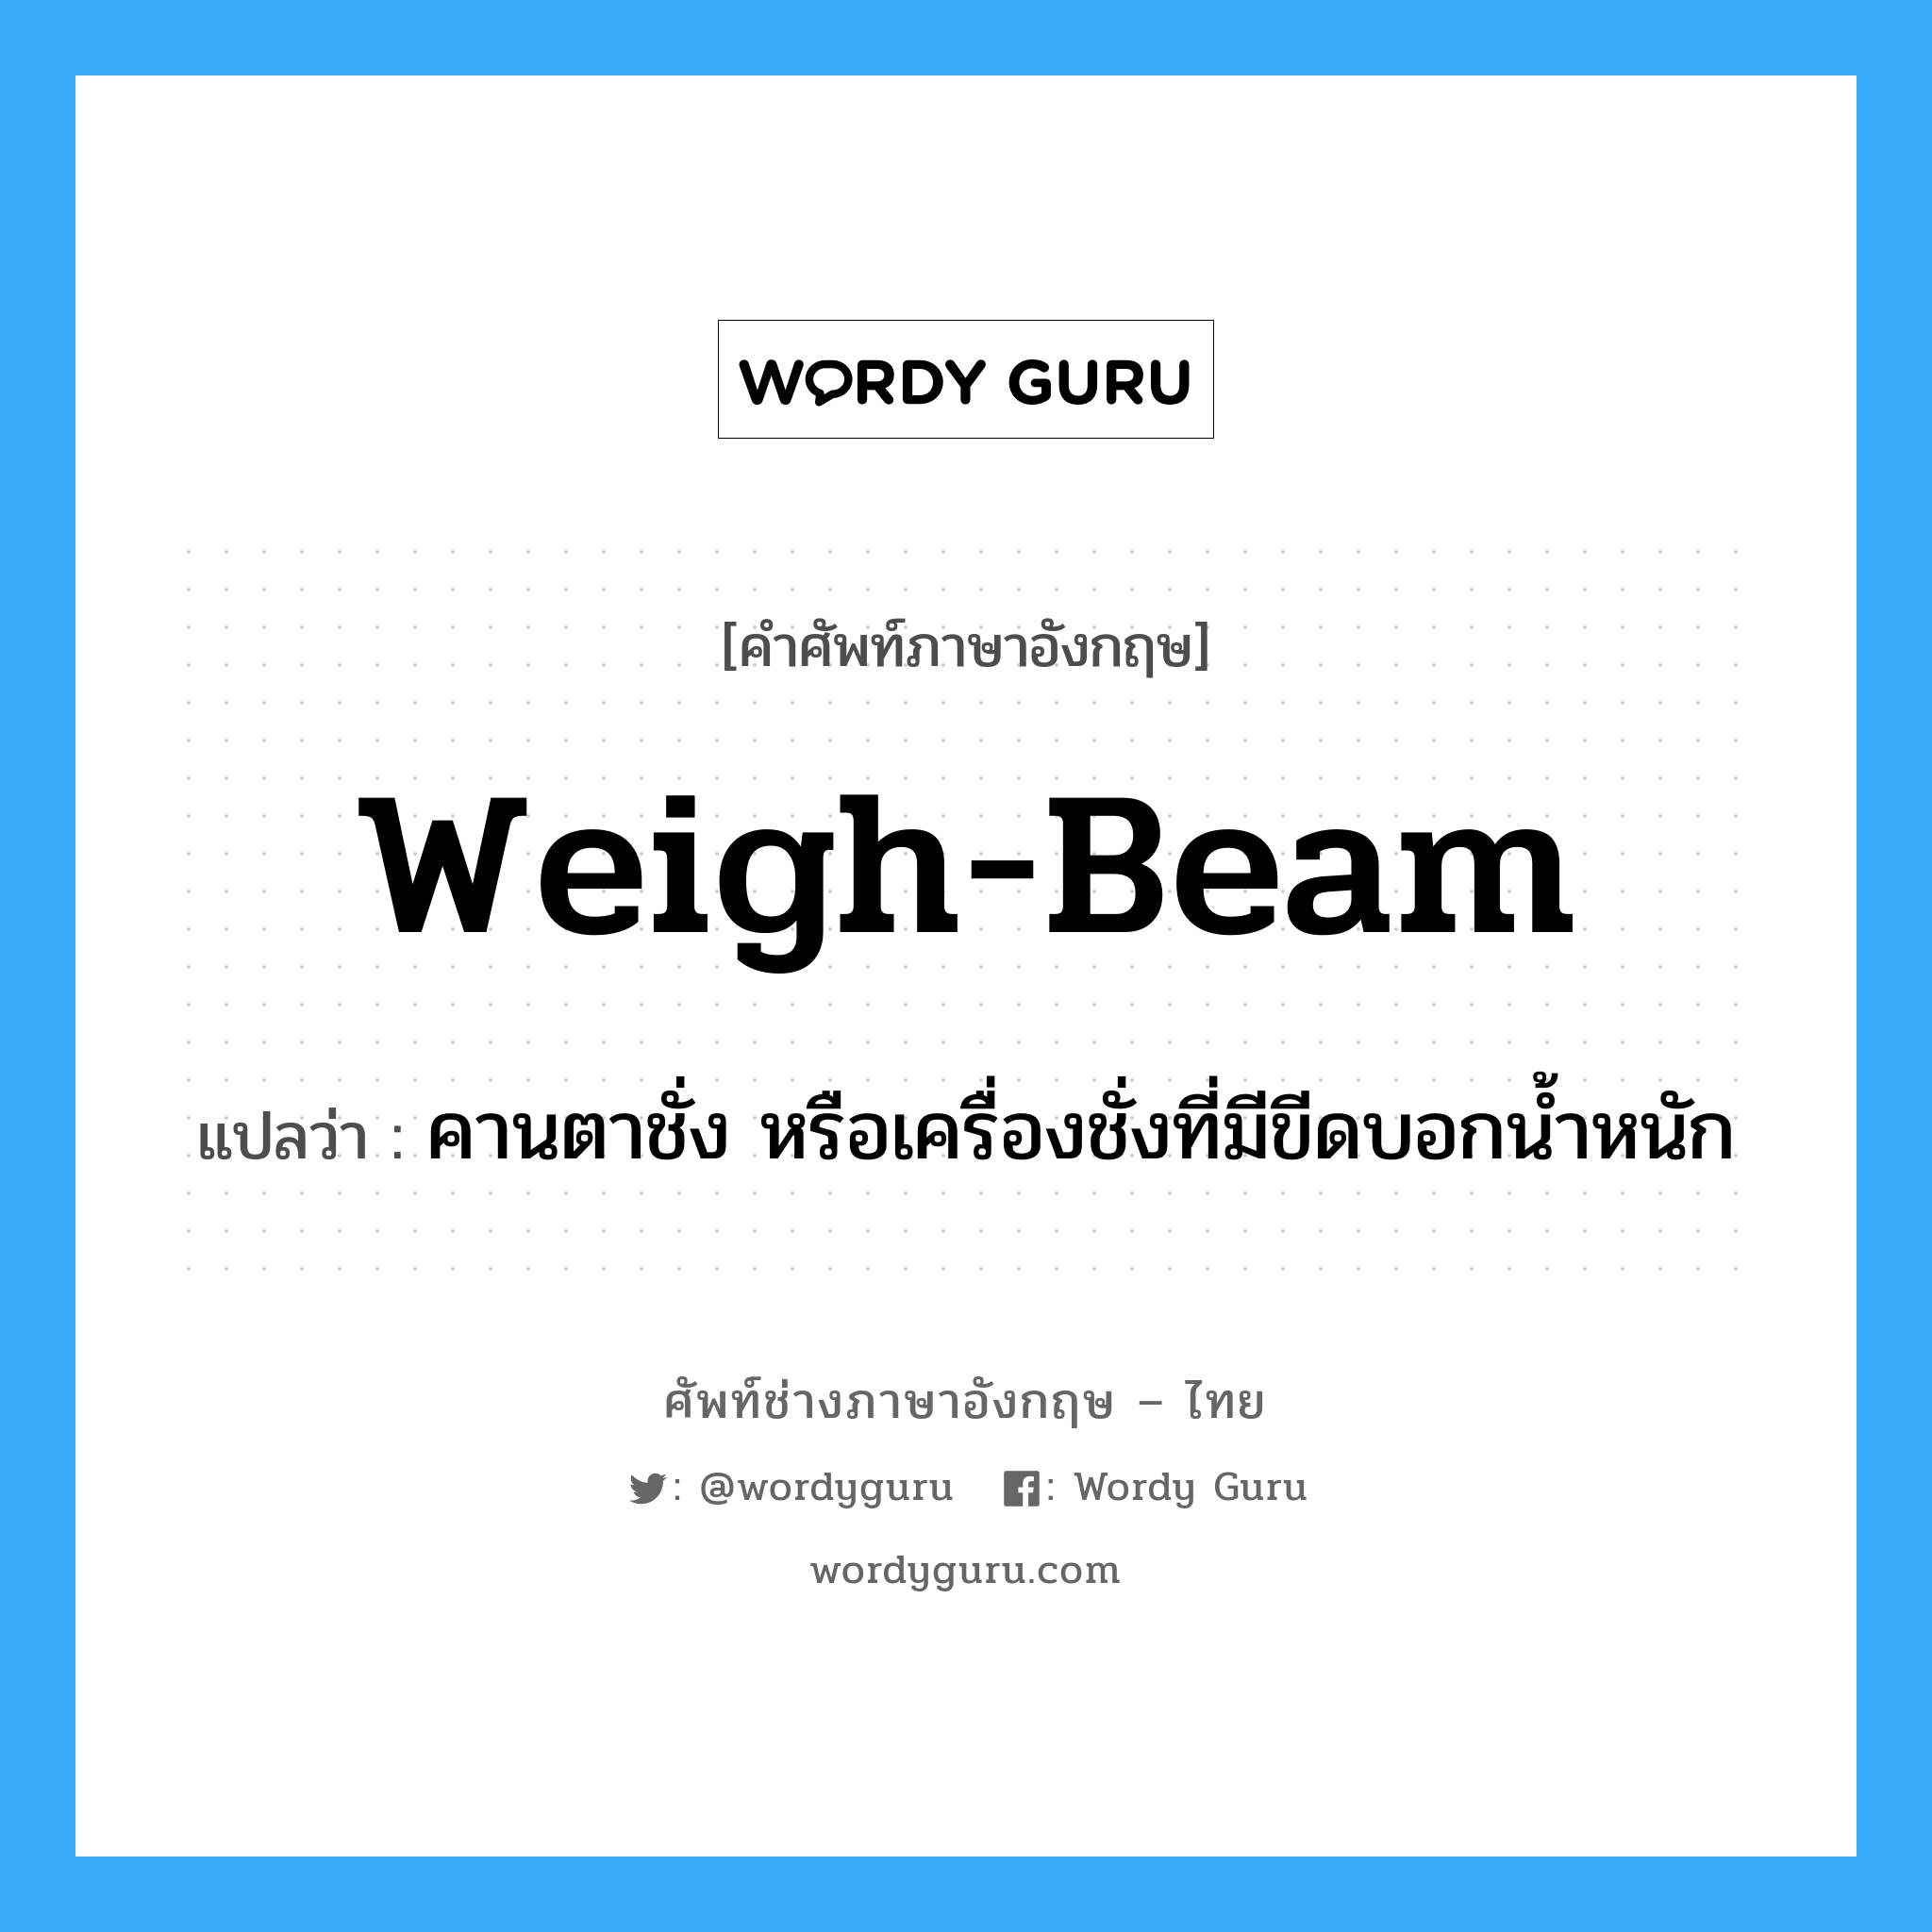 weigh-beam แปลว่า?, คำศัพท์ช่างภาษาอังกฤษ - ไทย weigh-beam คำศัพท์ภาษาอังกฤษ weigh-beam แปลว่า คานตาชั่ง หรือเครื่องชั่งที่มีขีดบอกน้ำหนัก